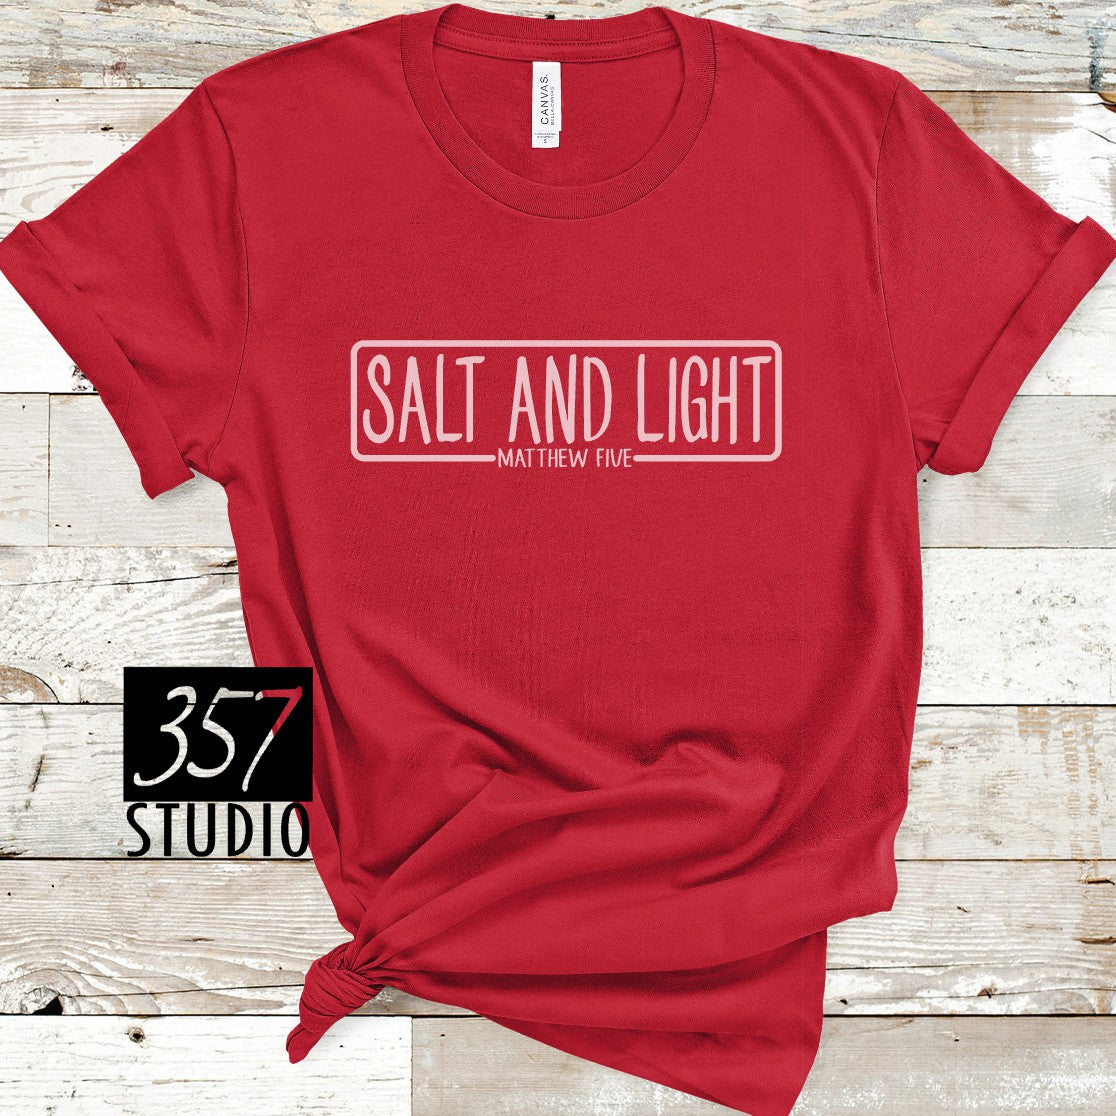 Salt & Light